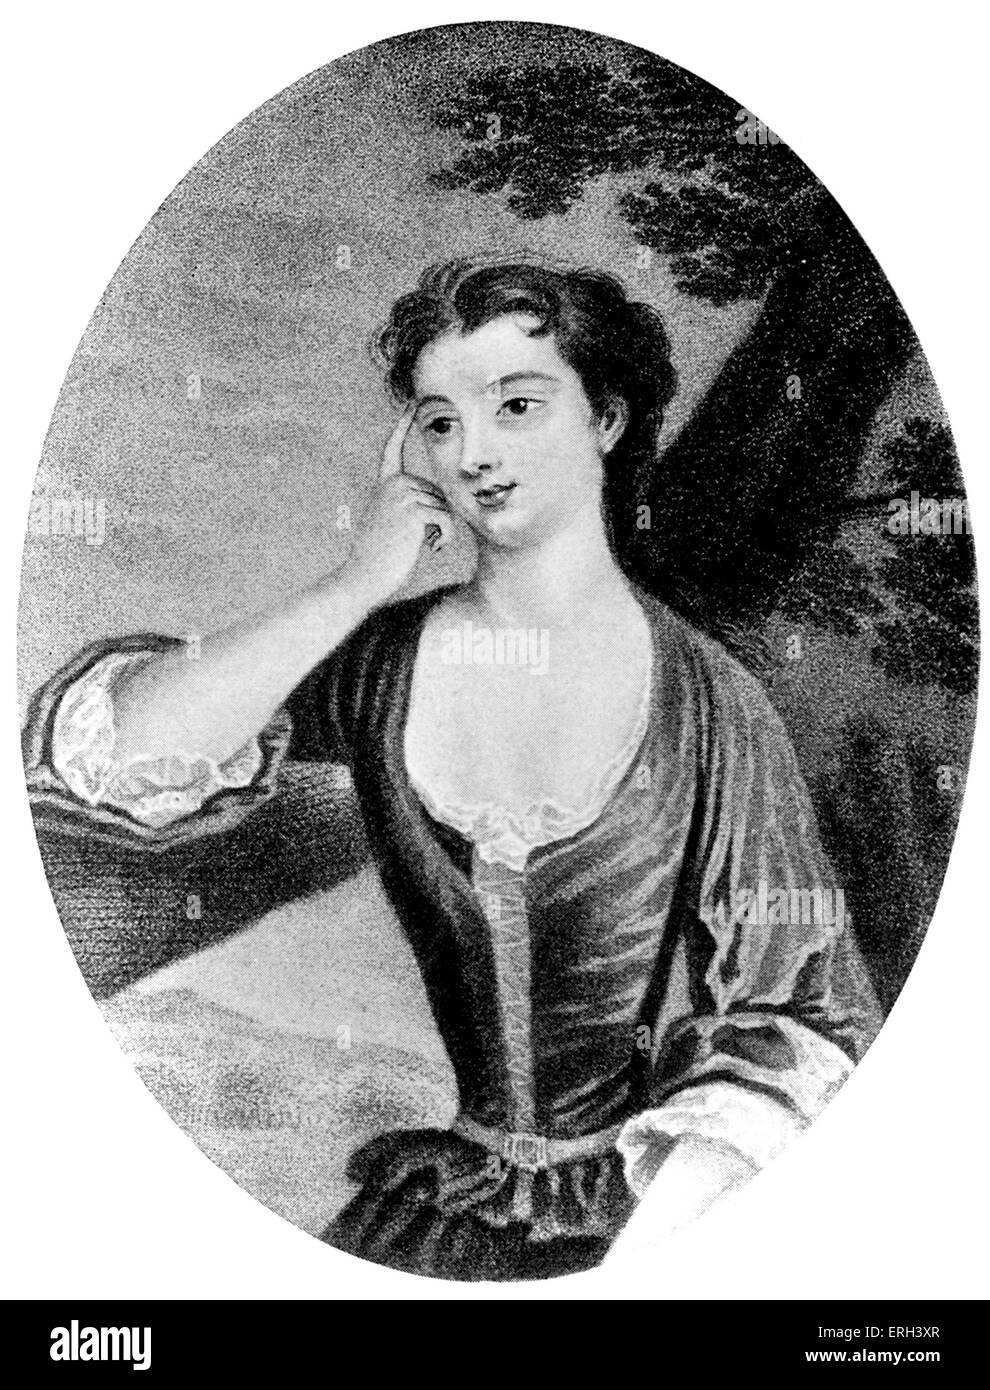 Lady Mary Wortley Montagu - Porträt von 1710. Nach der Gravur von Caroline Watson. Englischer Schriftsteller und Aristokrat, 26. Mai 1689 - 21. August 1762. Stockfoto